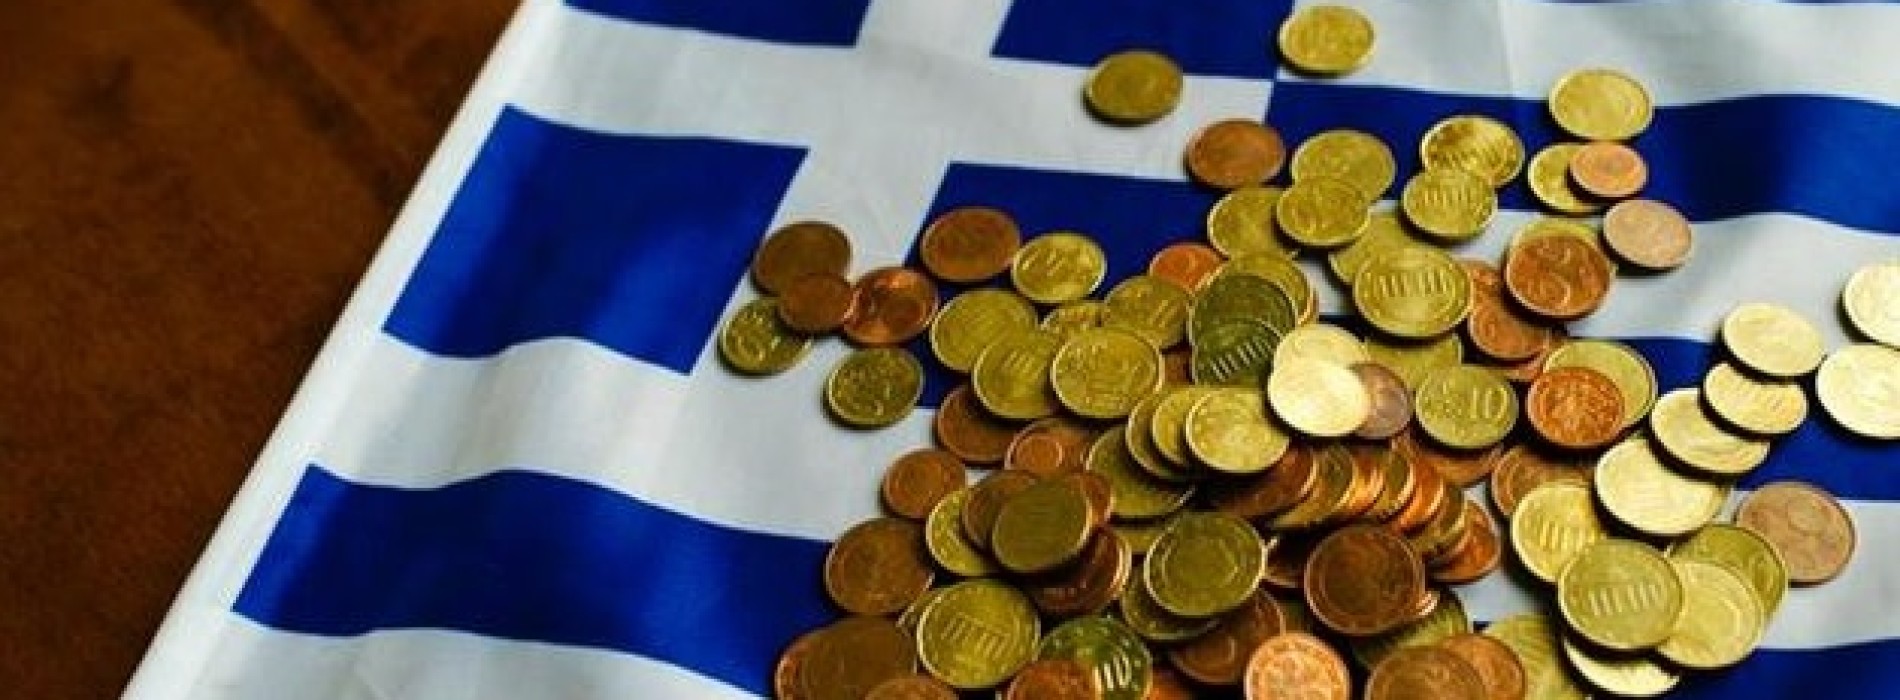 Grecy nie chcą dalszej pomocy finansowej